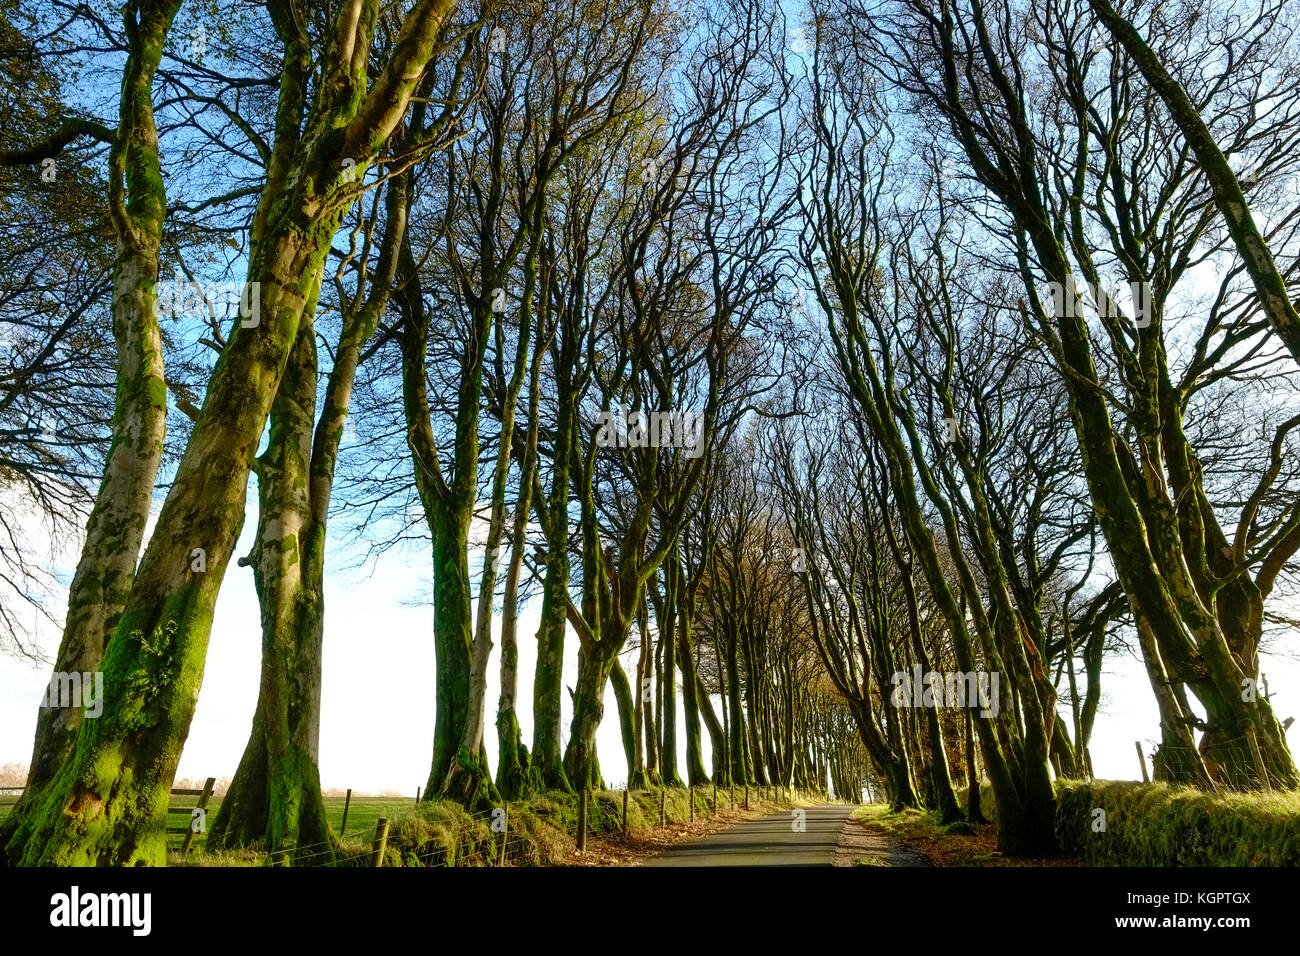 Avenue of beech trees, Dartmoor, Devon. UK Stock Photo